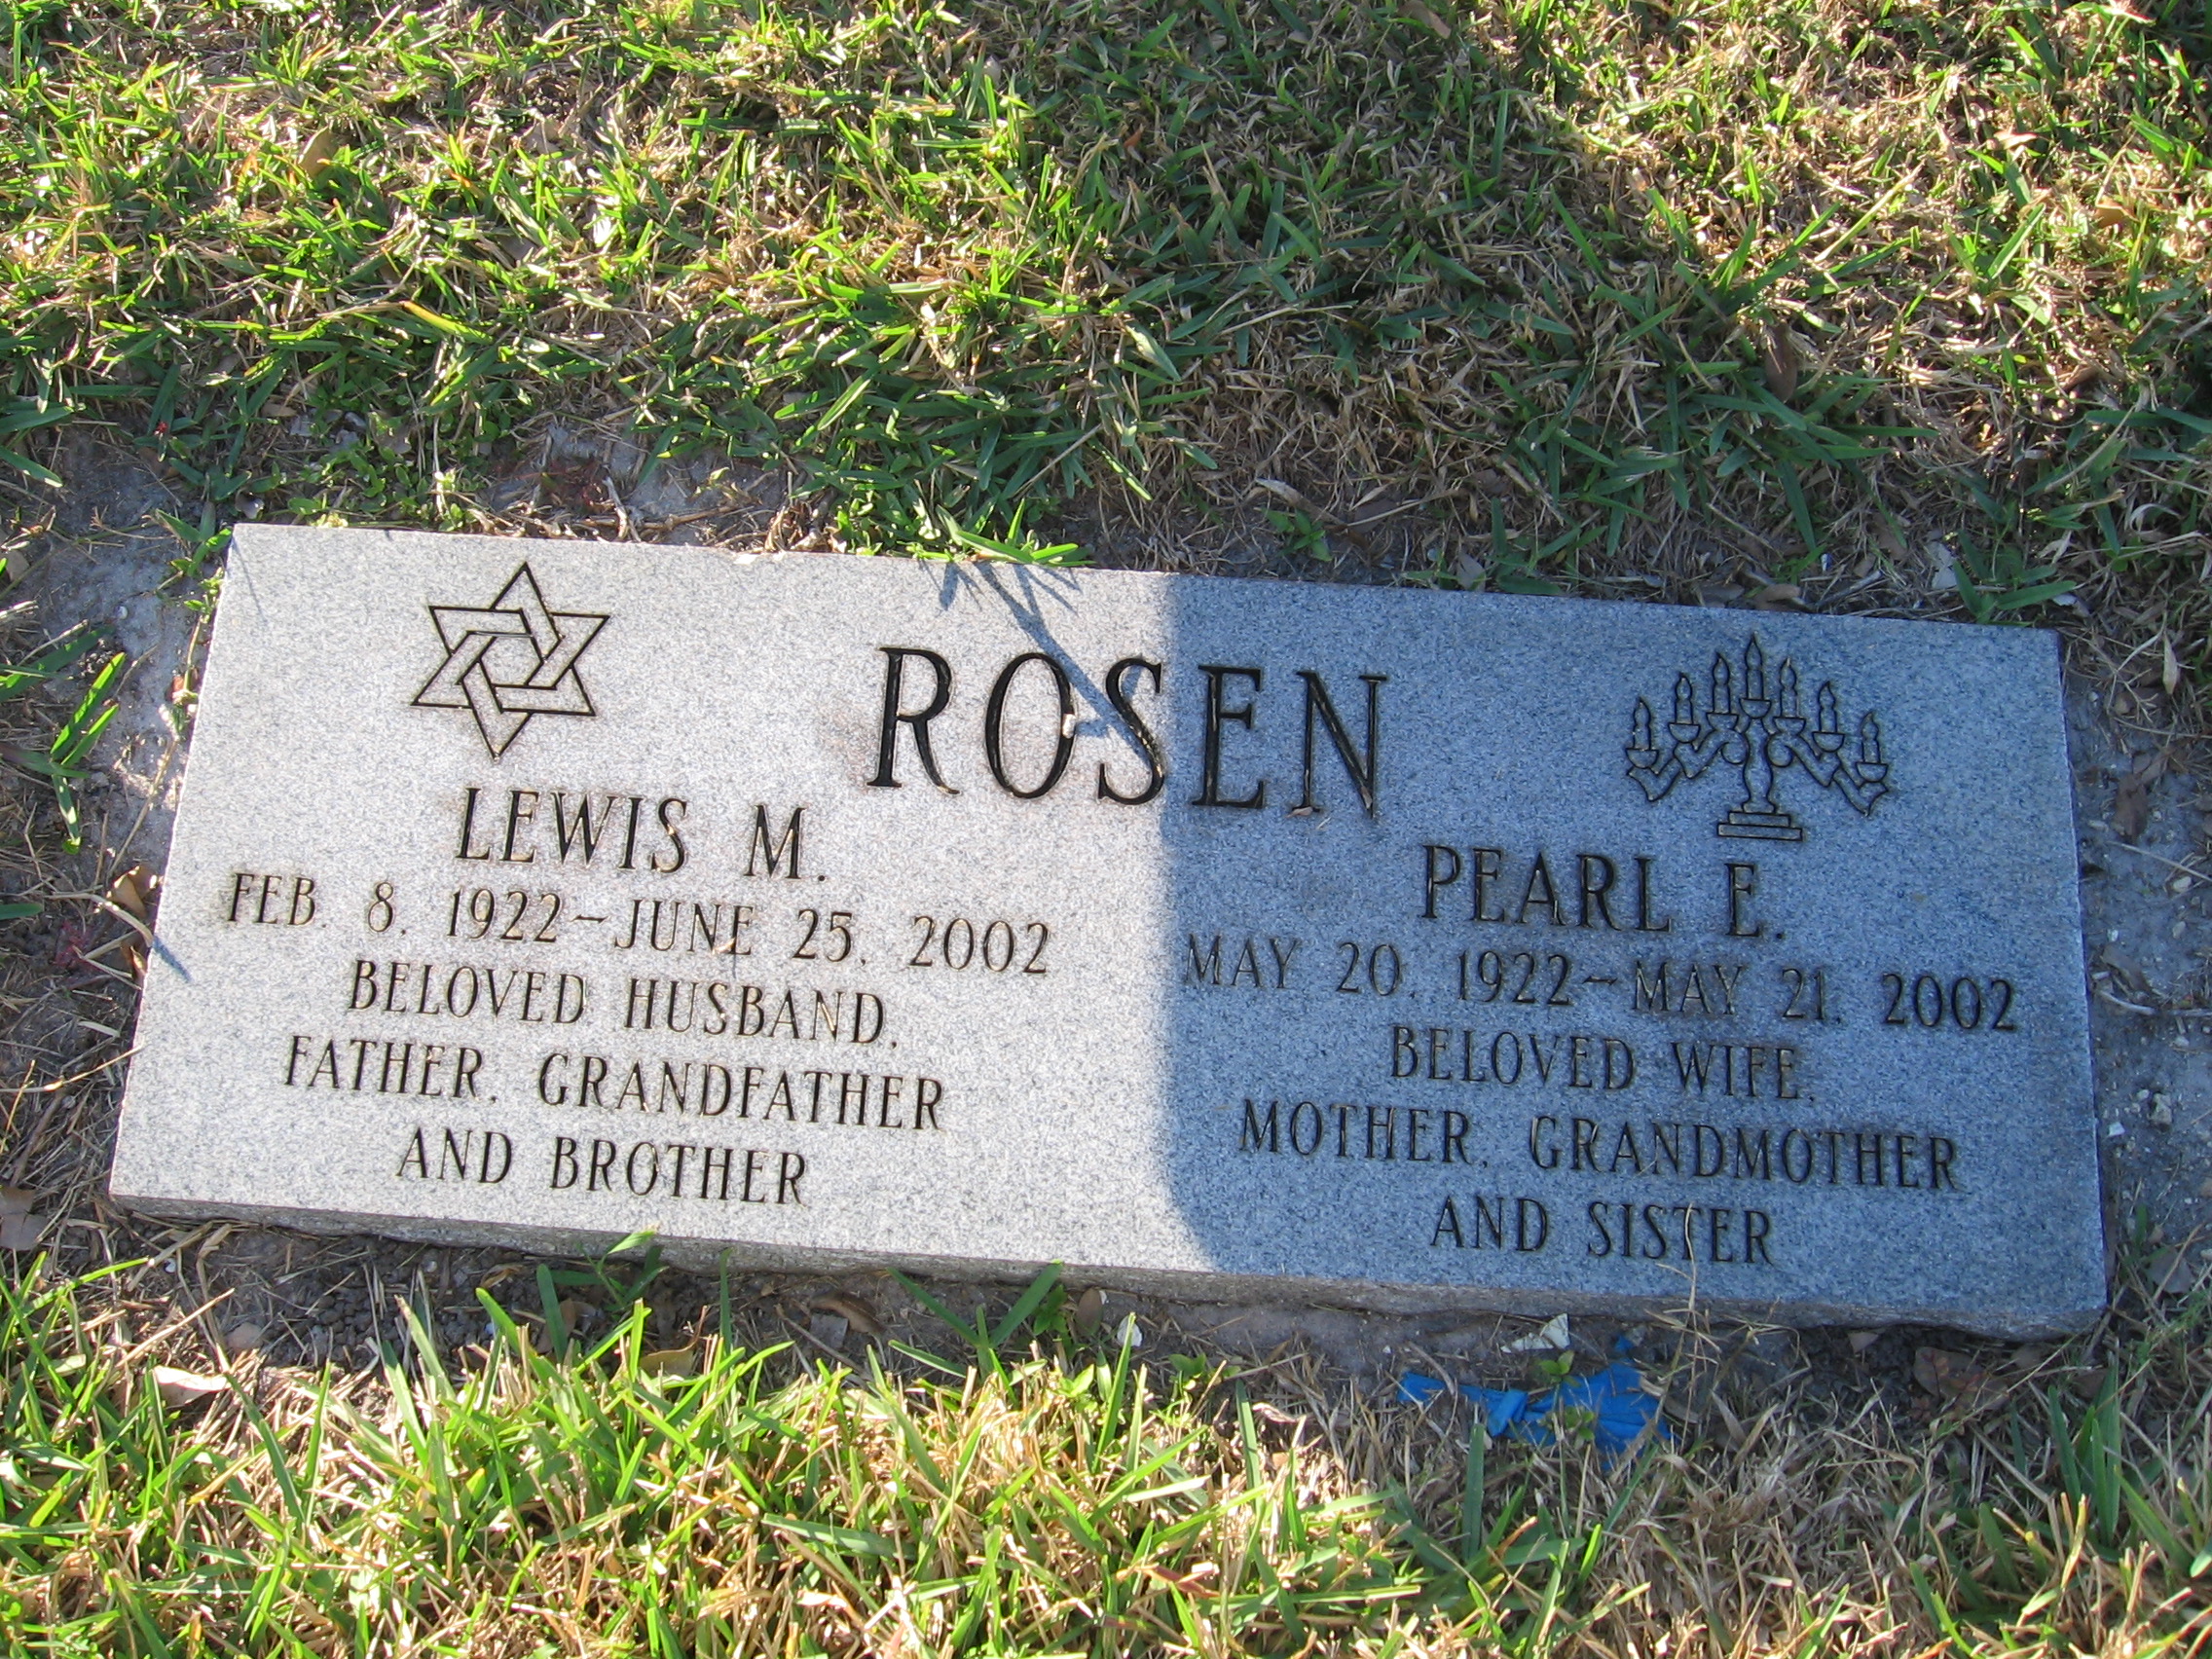 Pearl E Rosen